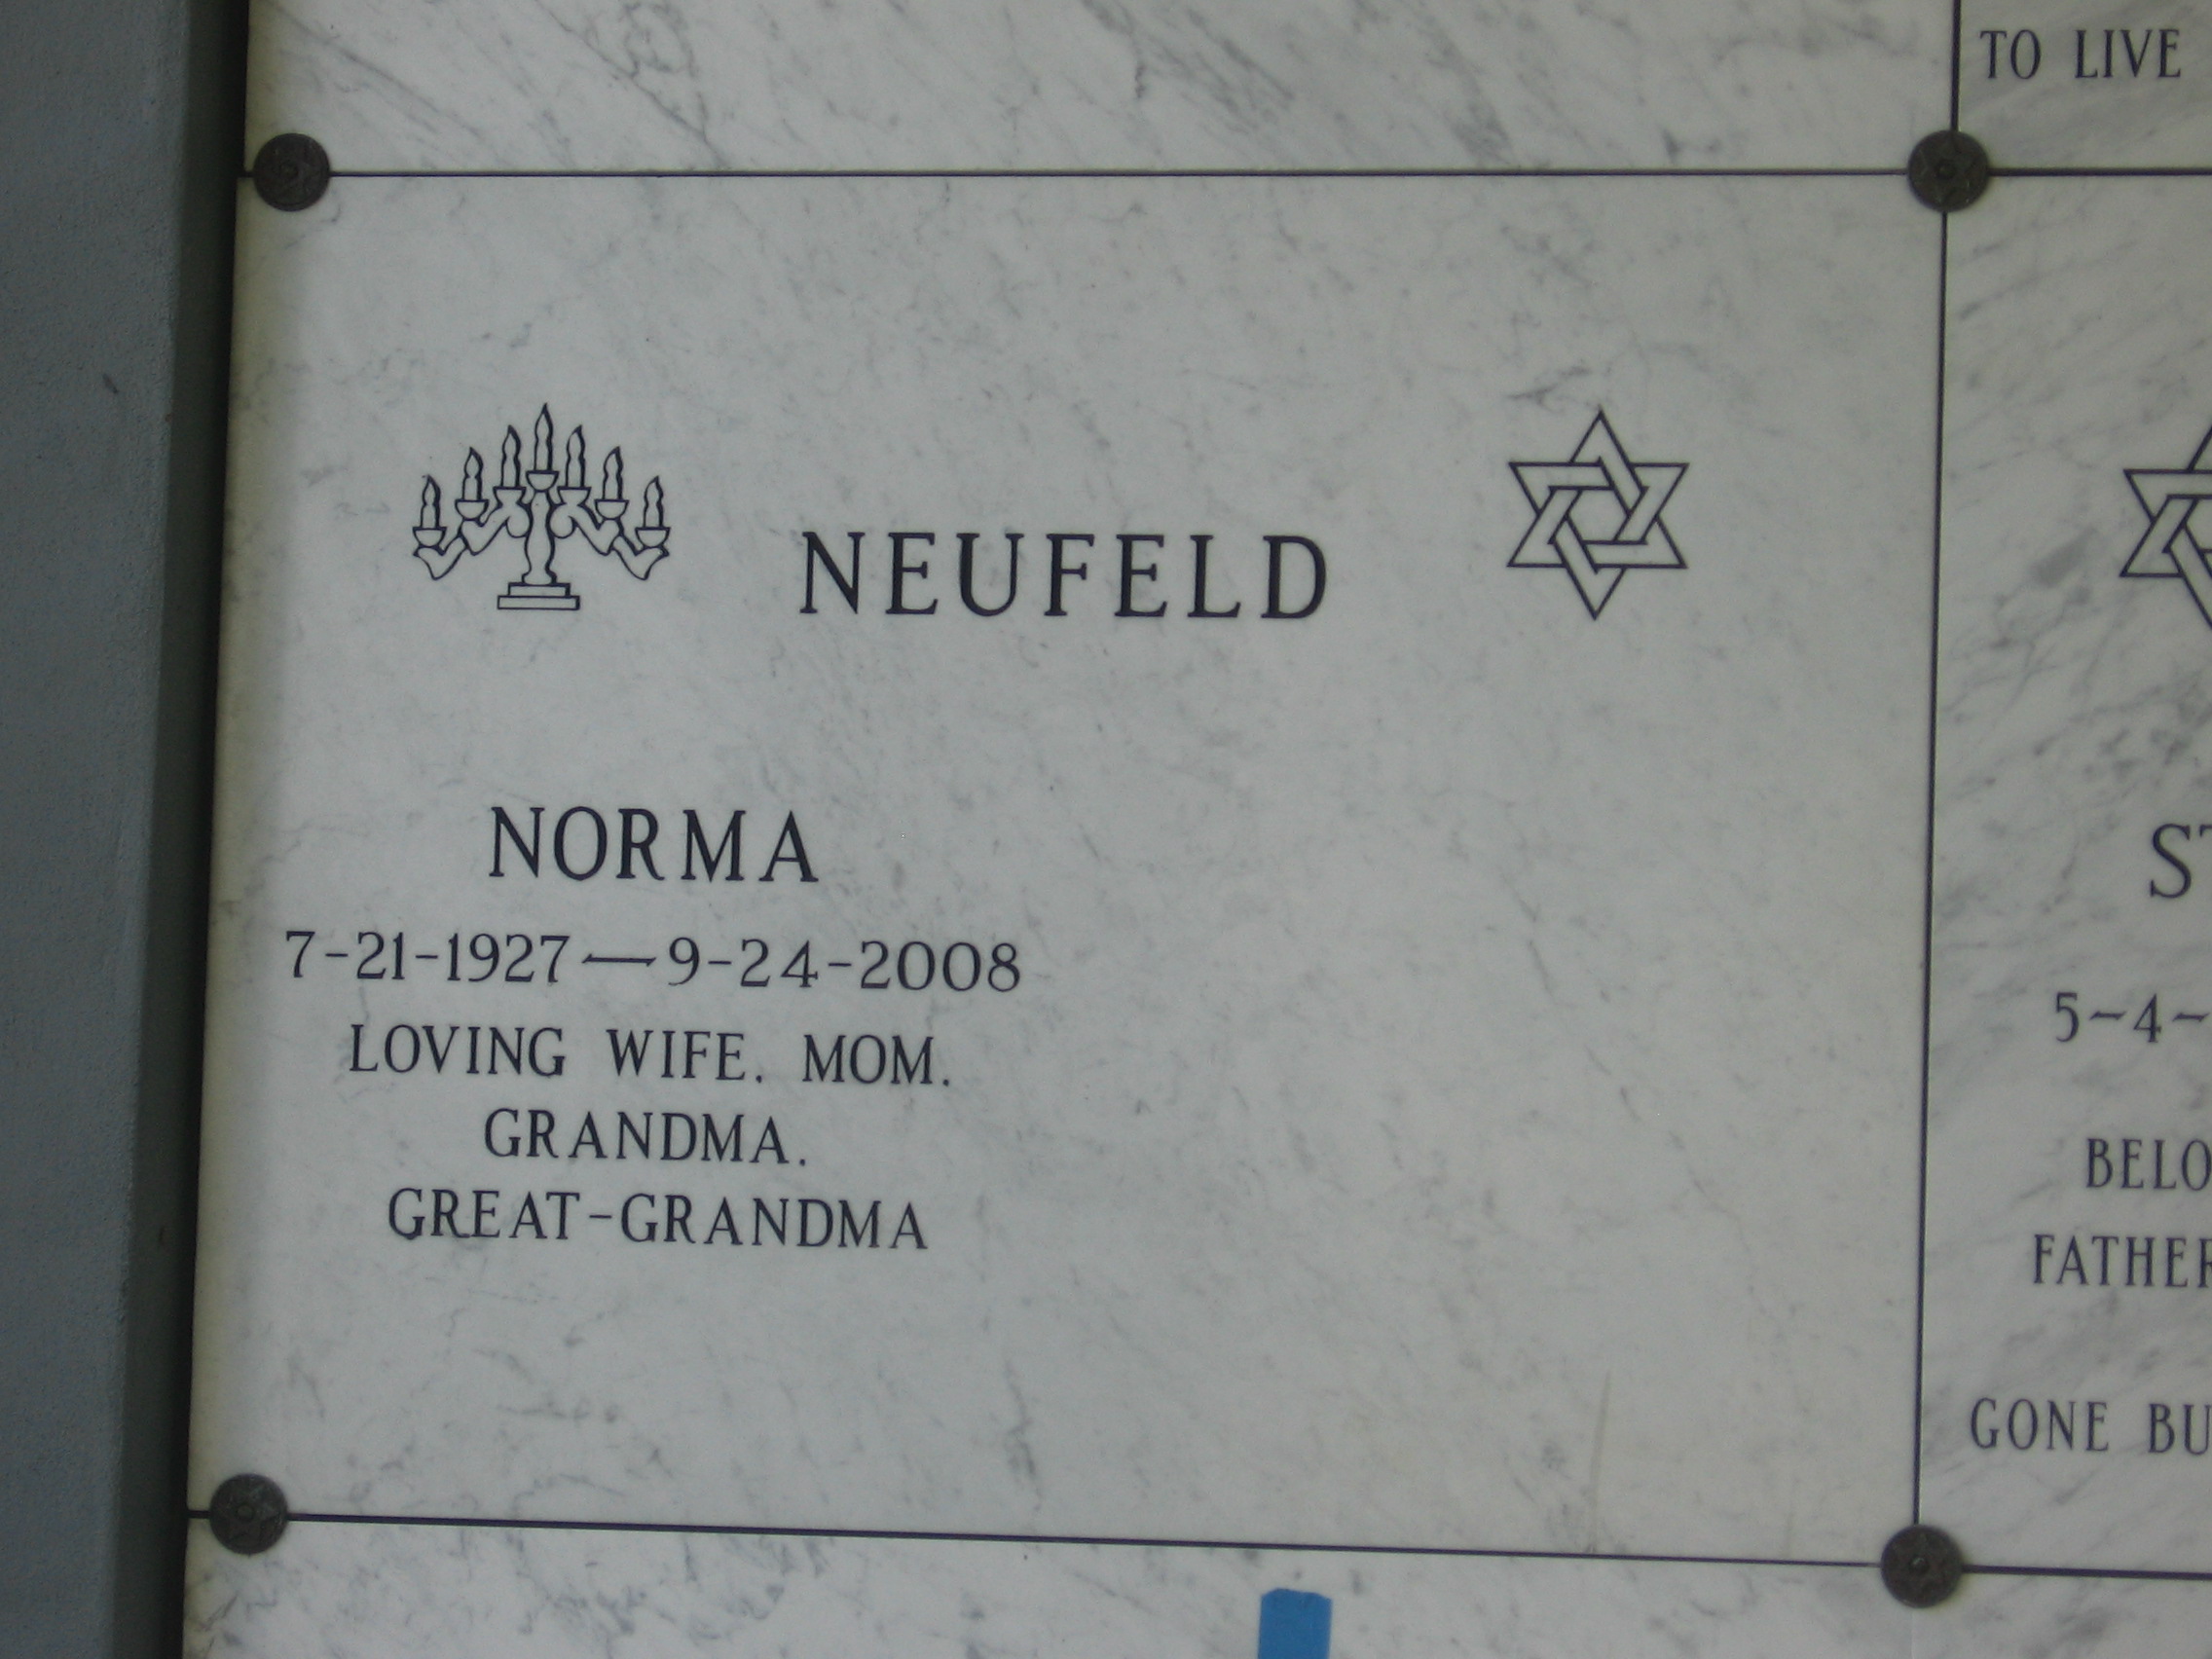 Norma Neufeld